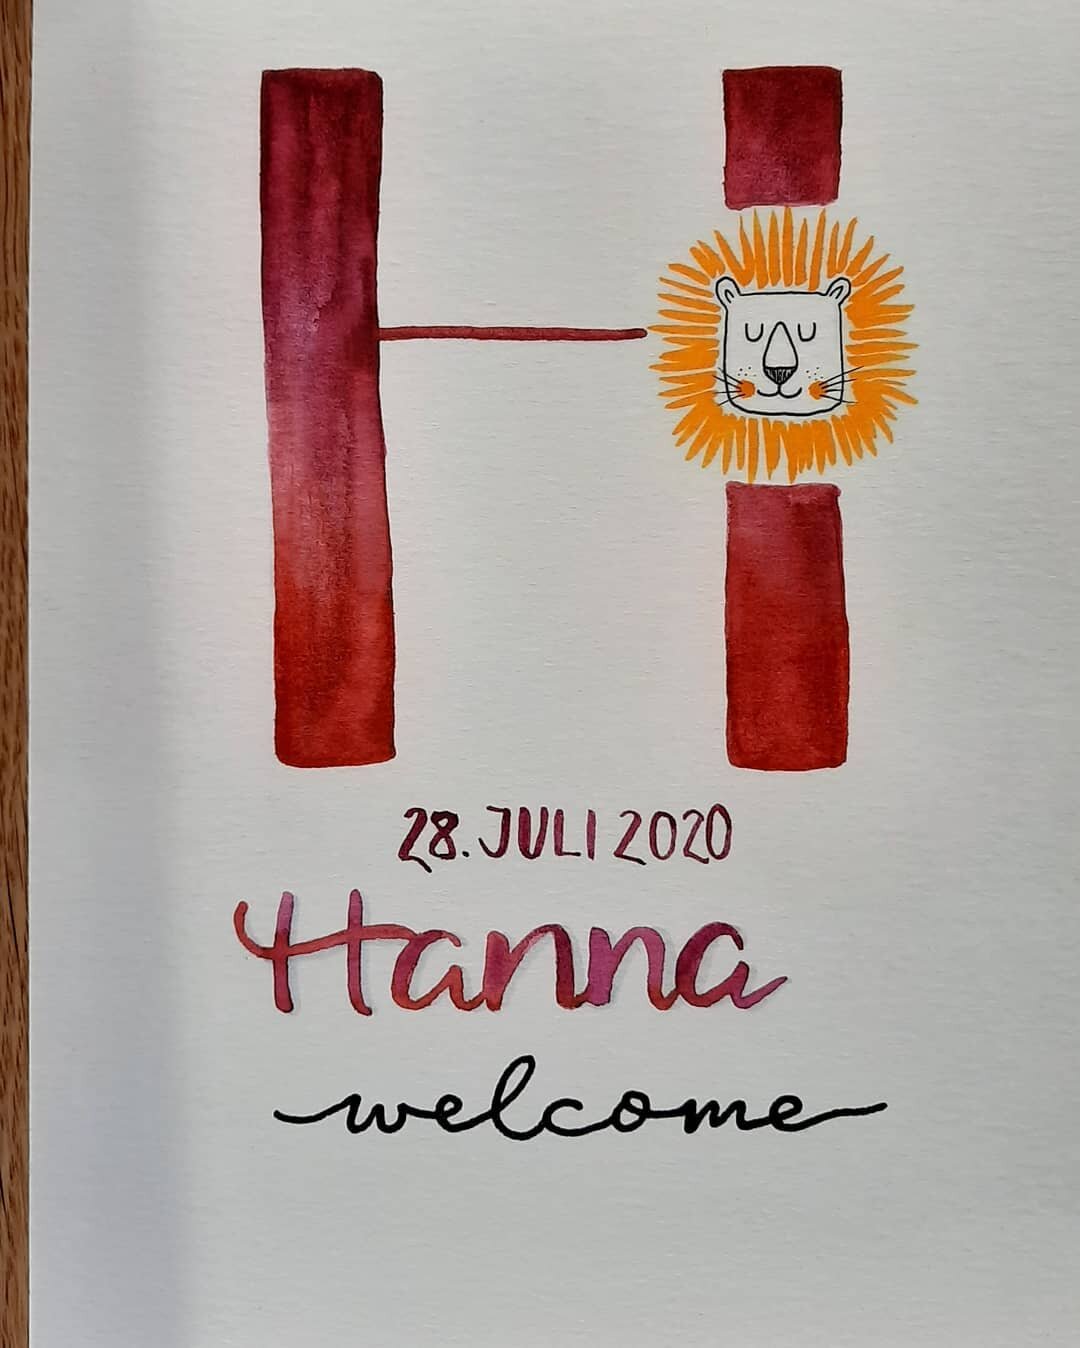 Welcome Hanna🦁😊
.
.
.
.
.
Design from: @m.h.lettering / L&ouml;we: aus dem www
Stifte: #karinbrushmarkerpro #micronpigma #gellyrollglaze
(Unbezahlte/unbeauftragte Werbung)

#welcometotheworldbabygirl #welcometotheworld #babygirl #newborn #handlette